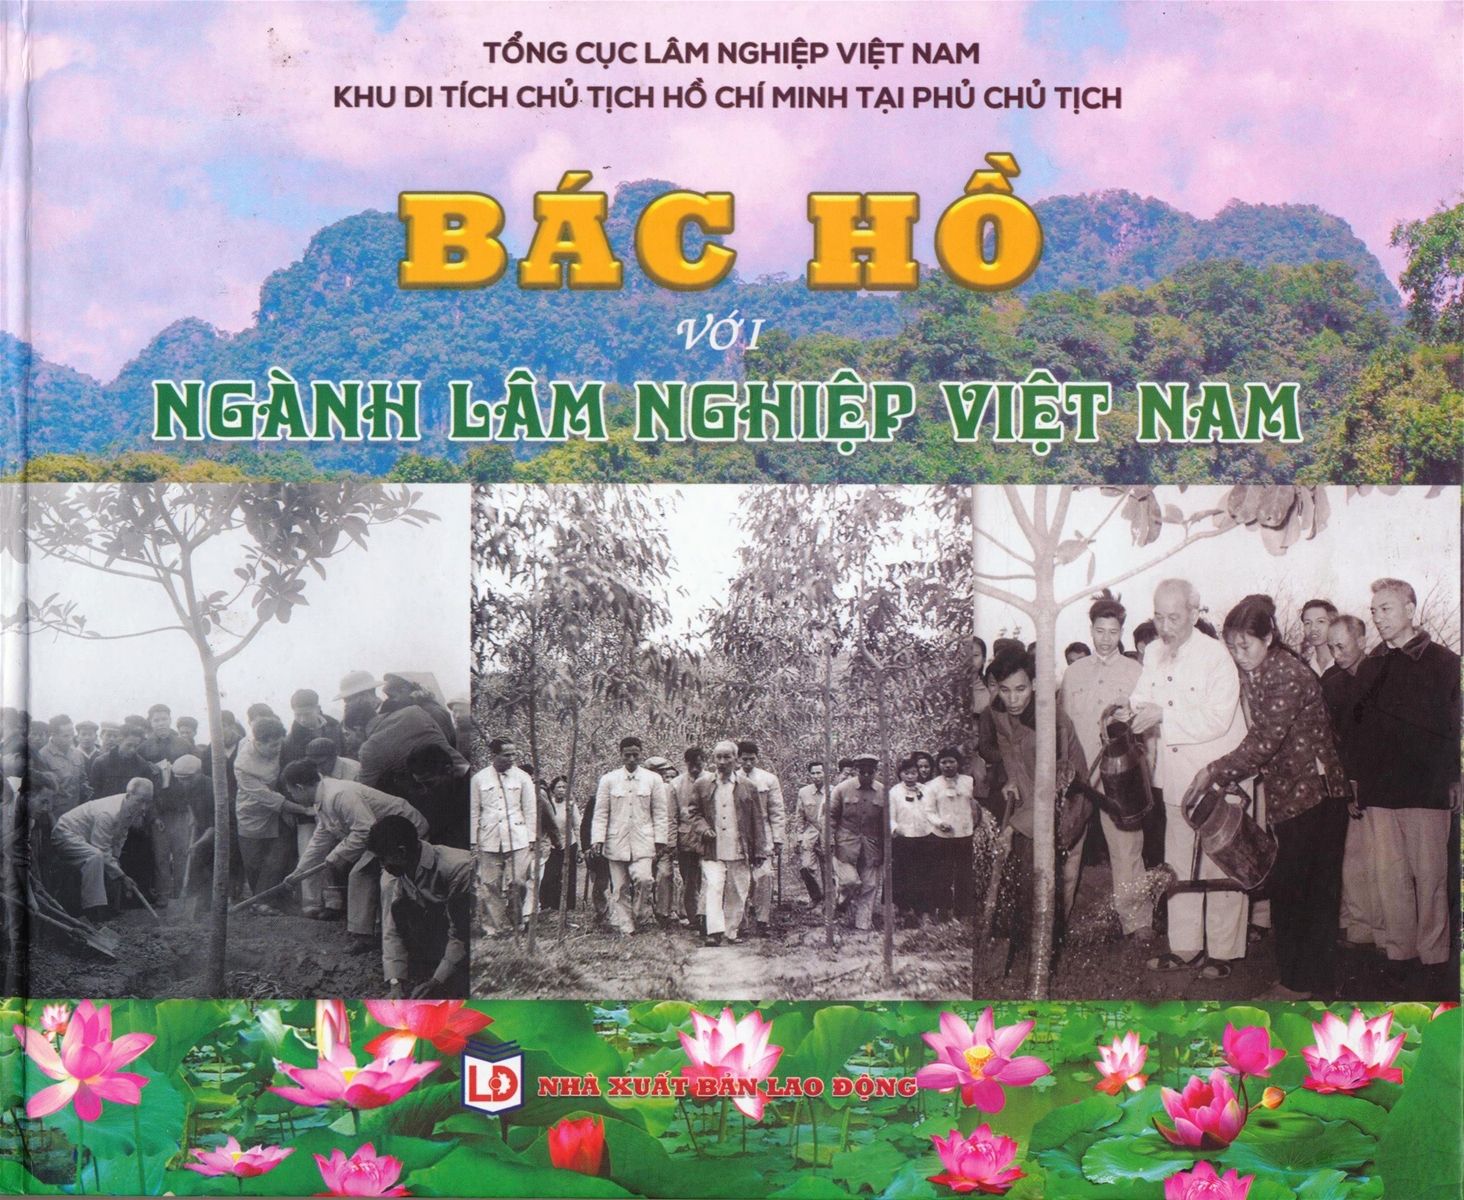 Giới thiệu cuốn sách “Bác Hồ với ngành Lâm nghiệp Việt Nam”